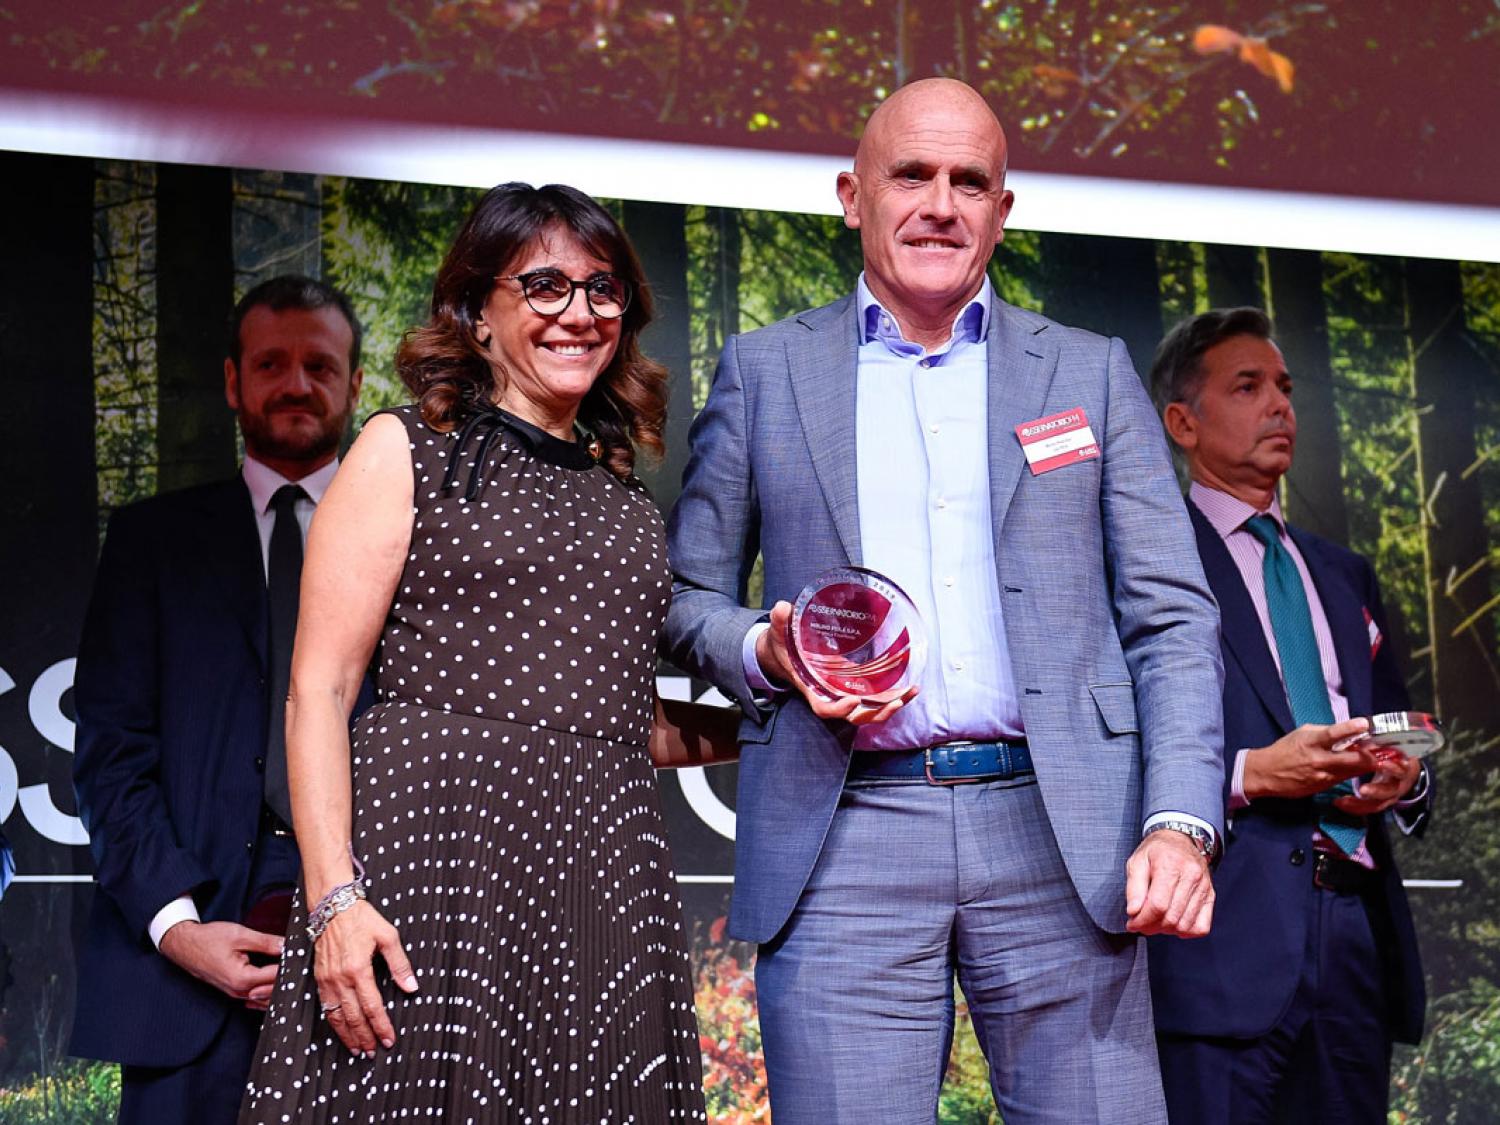 Molino Peila awarded as Excellent Company 2019 - Ugo Peila, CEO